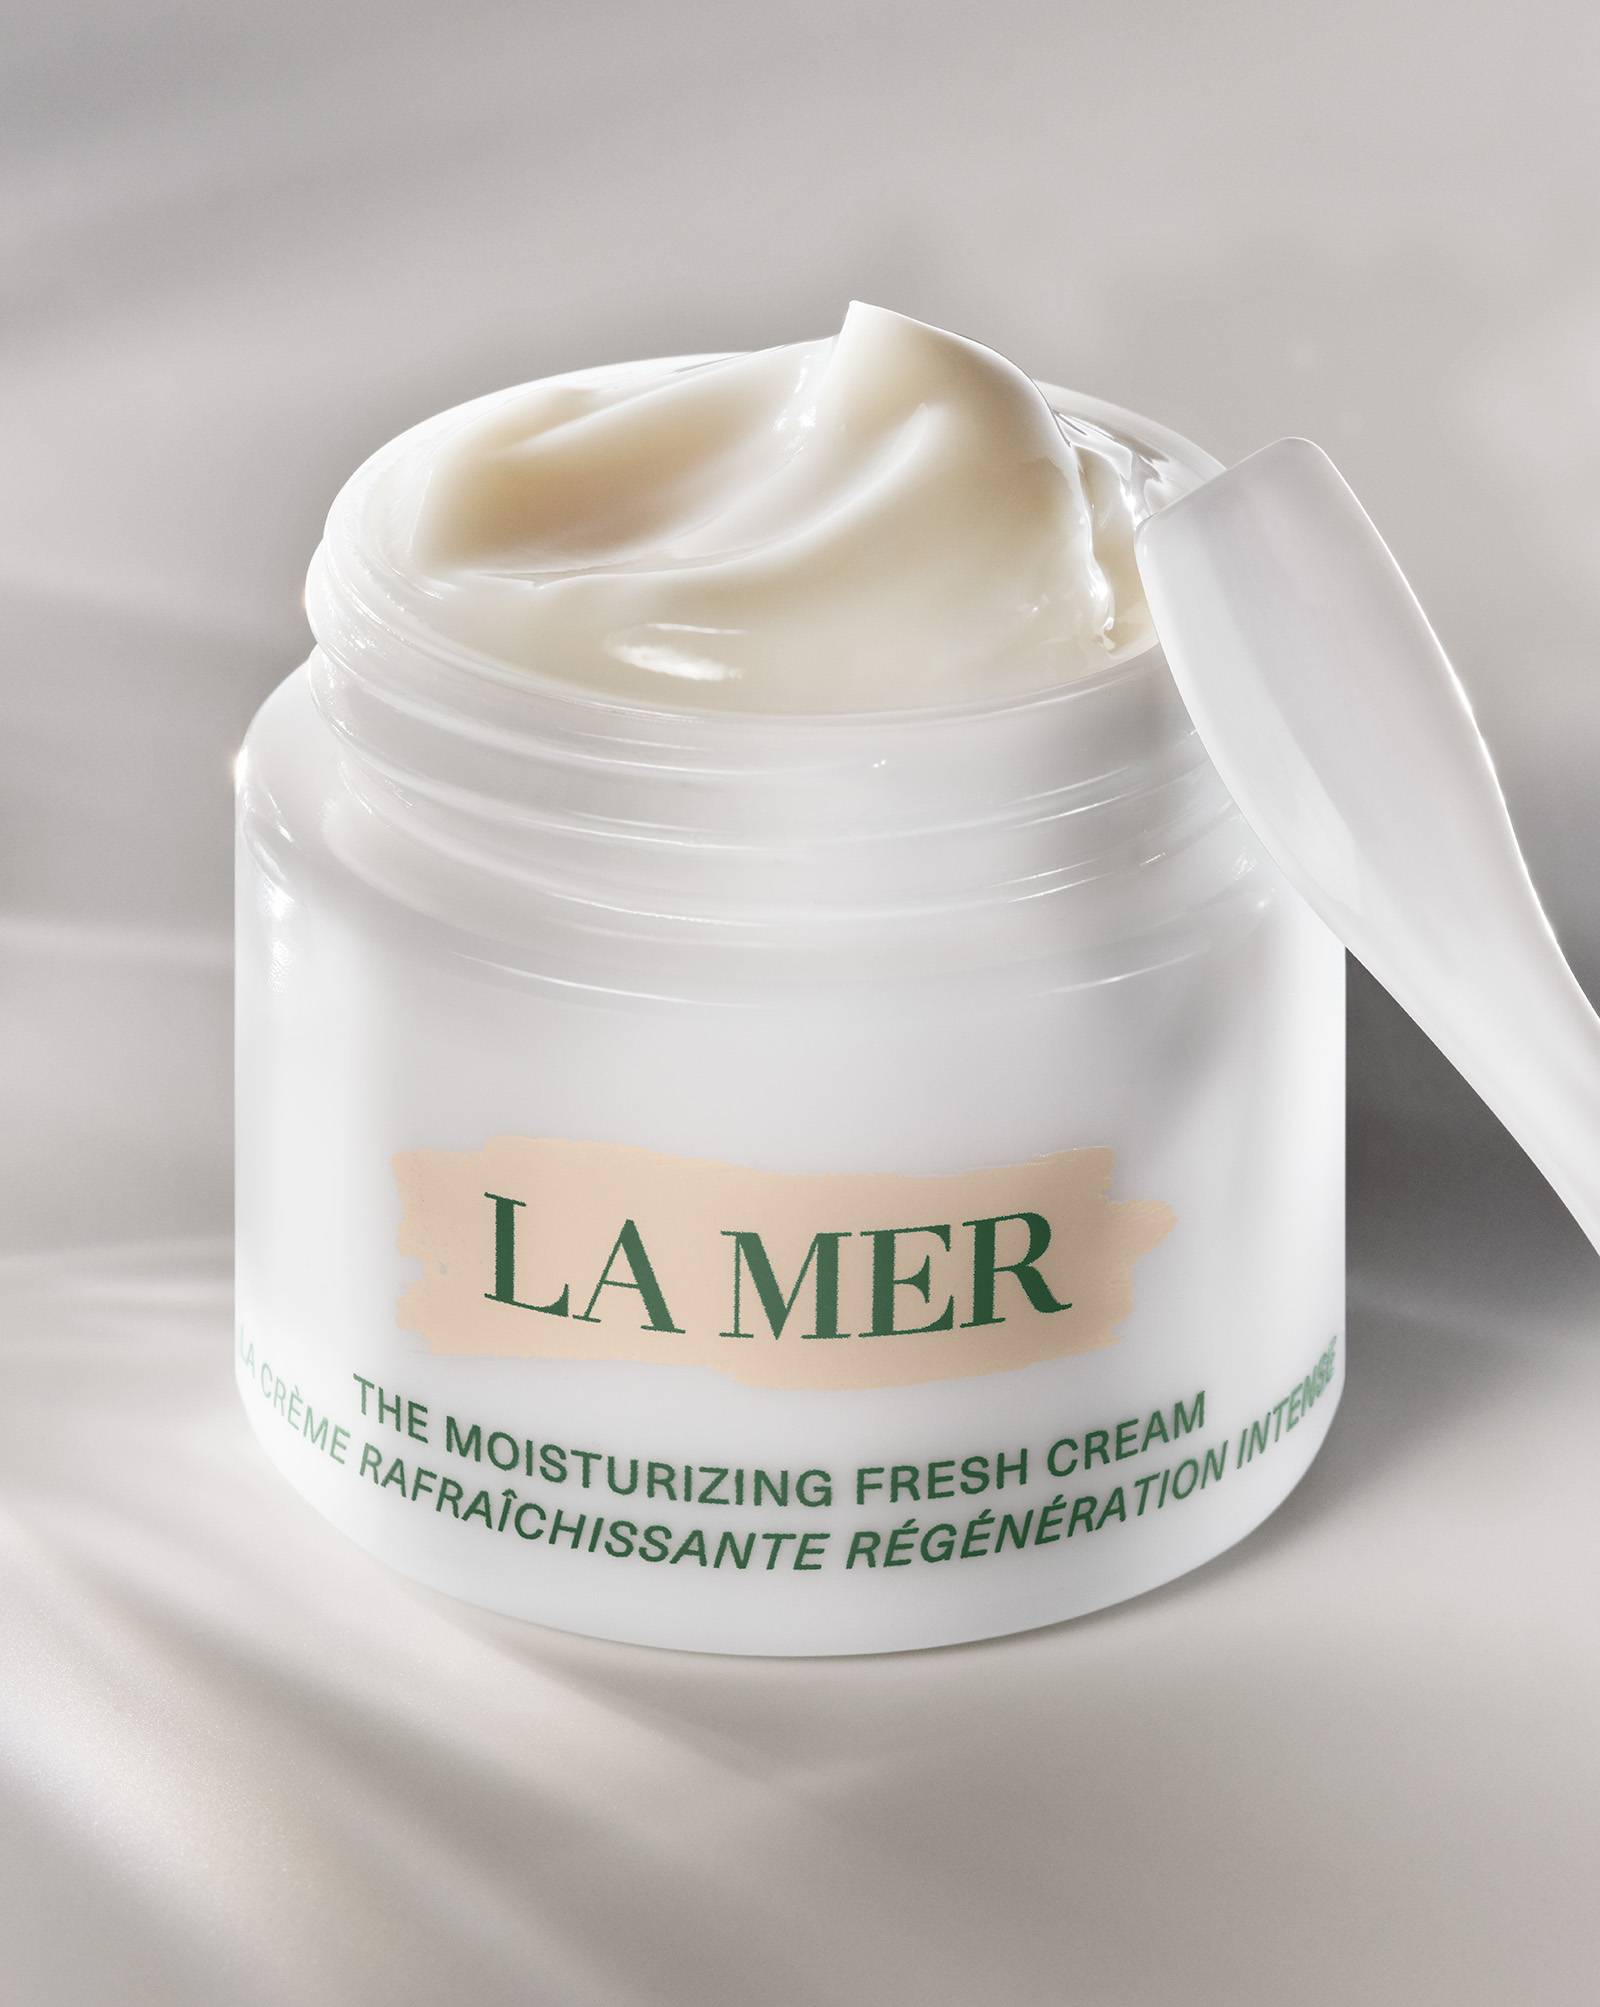 Premiera na miarę sezonu nagród: The Moisturizing Fresh Cream od marki La Mer (Fot. Materiały prasowe)